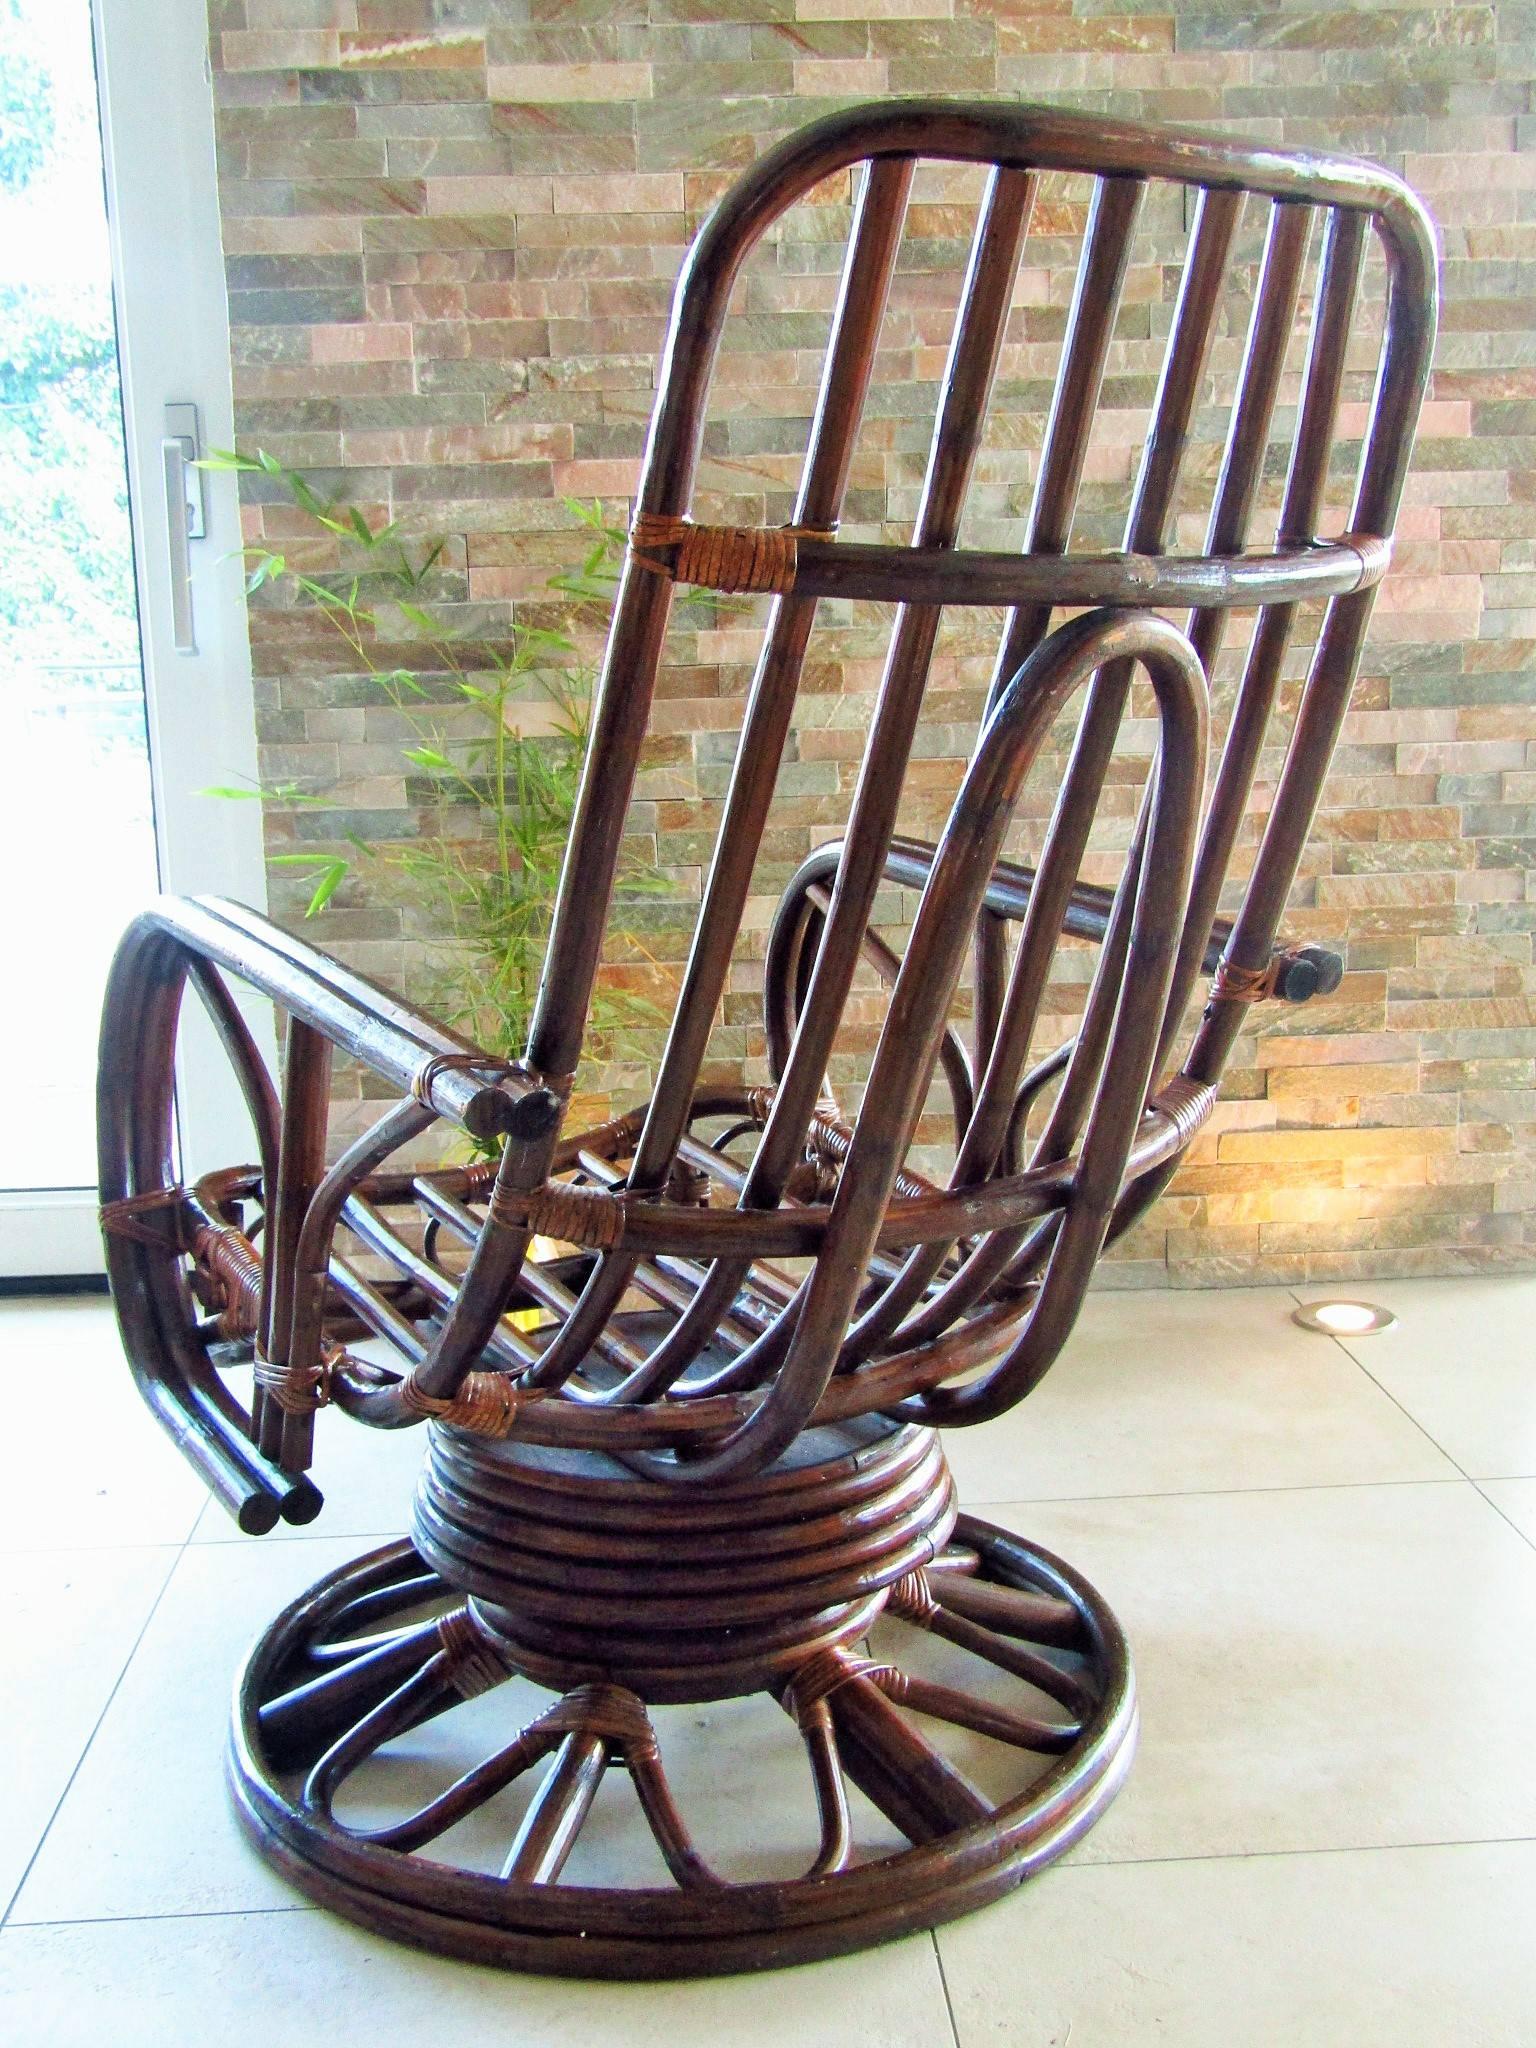 Drehbarer Rattan-Schaukelstuhl aus der Mitte des Jahrhunderts, Frankreich, 1960er Jahre. Bitte sehen Sie sich das Detailbild des Schaukelmechanismus an. Große Spiralfedern im Fuß machen diesen Stuhl zum Schaukelstuhl. Sehr entspanntes Sitzen!
In